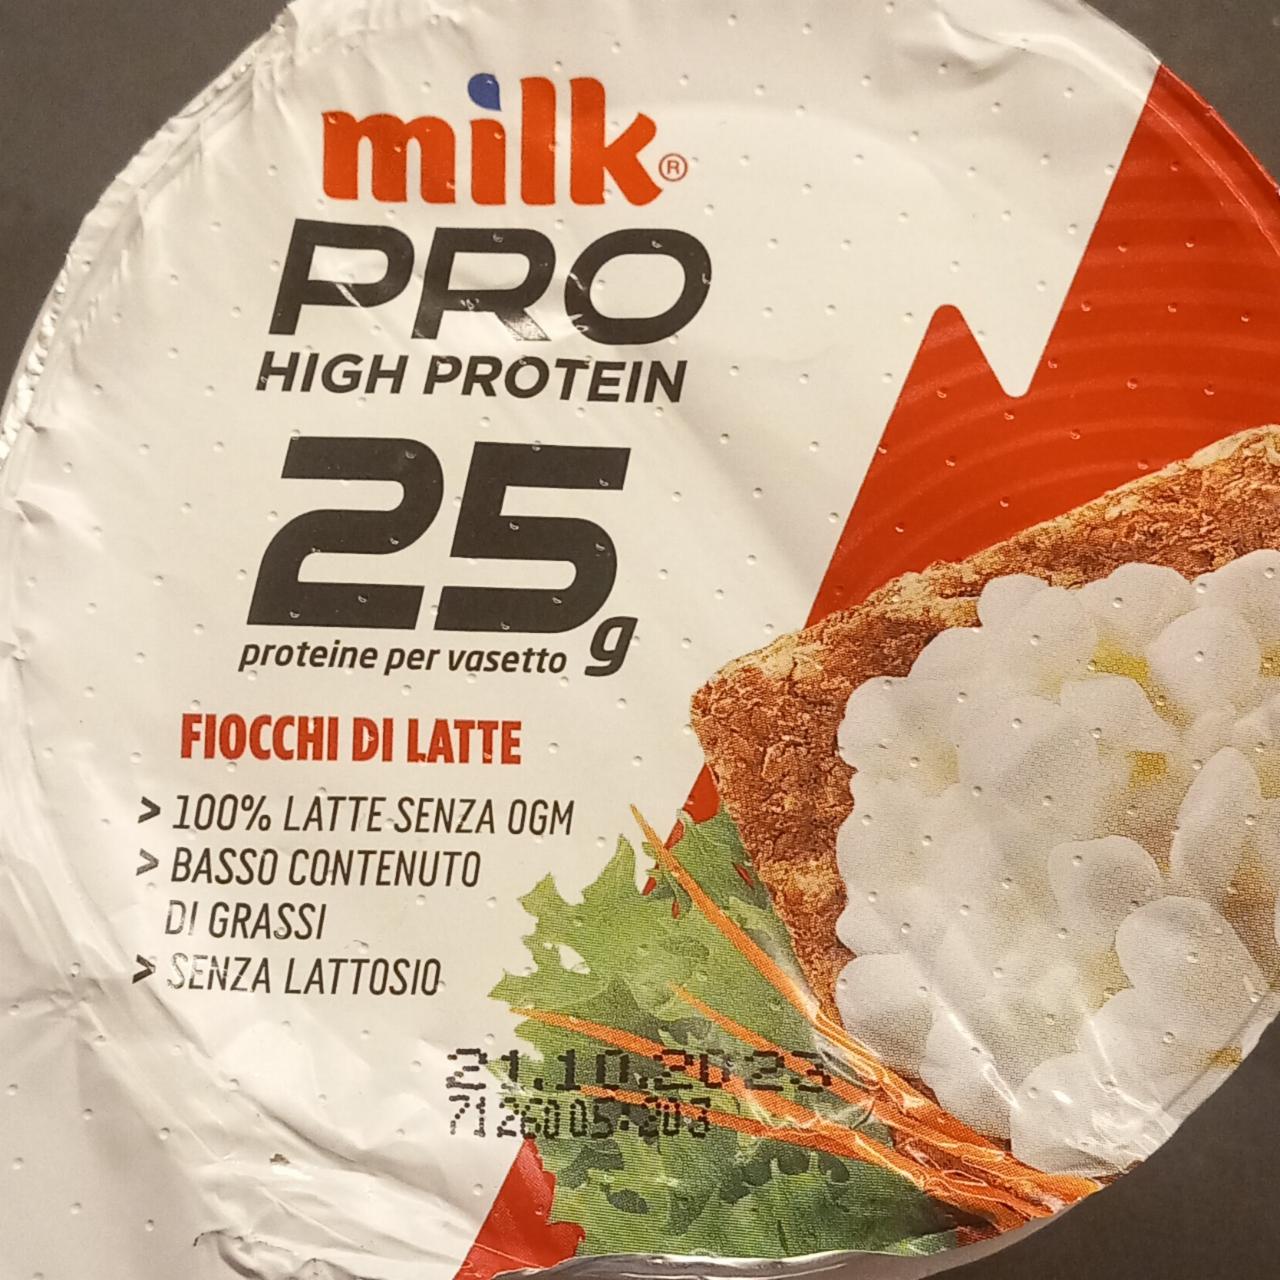 Fotografie - PRO High Protein Fiocchi di Latte senza lattosio Milk